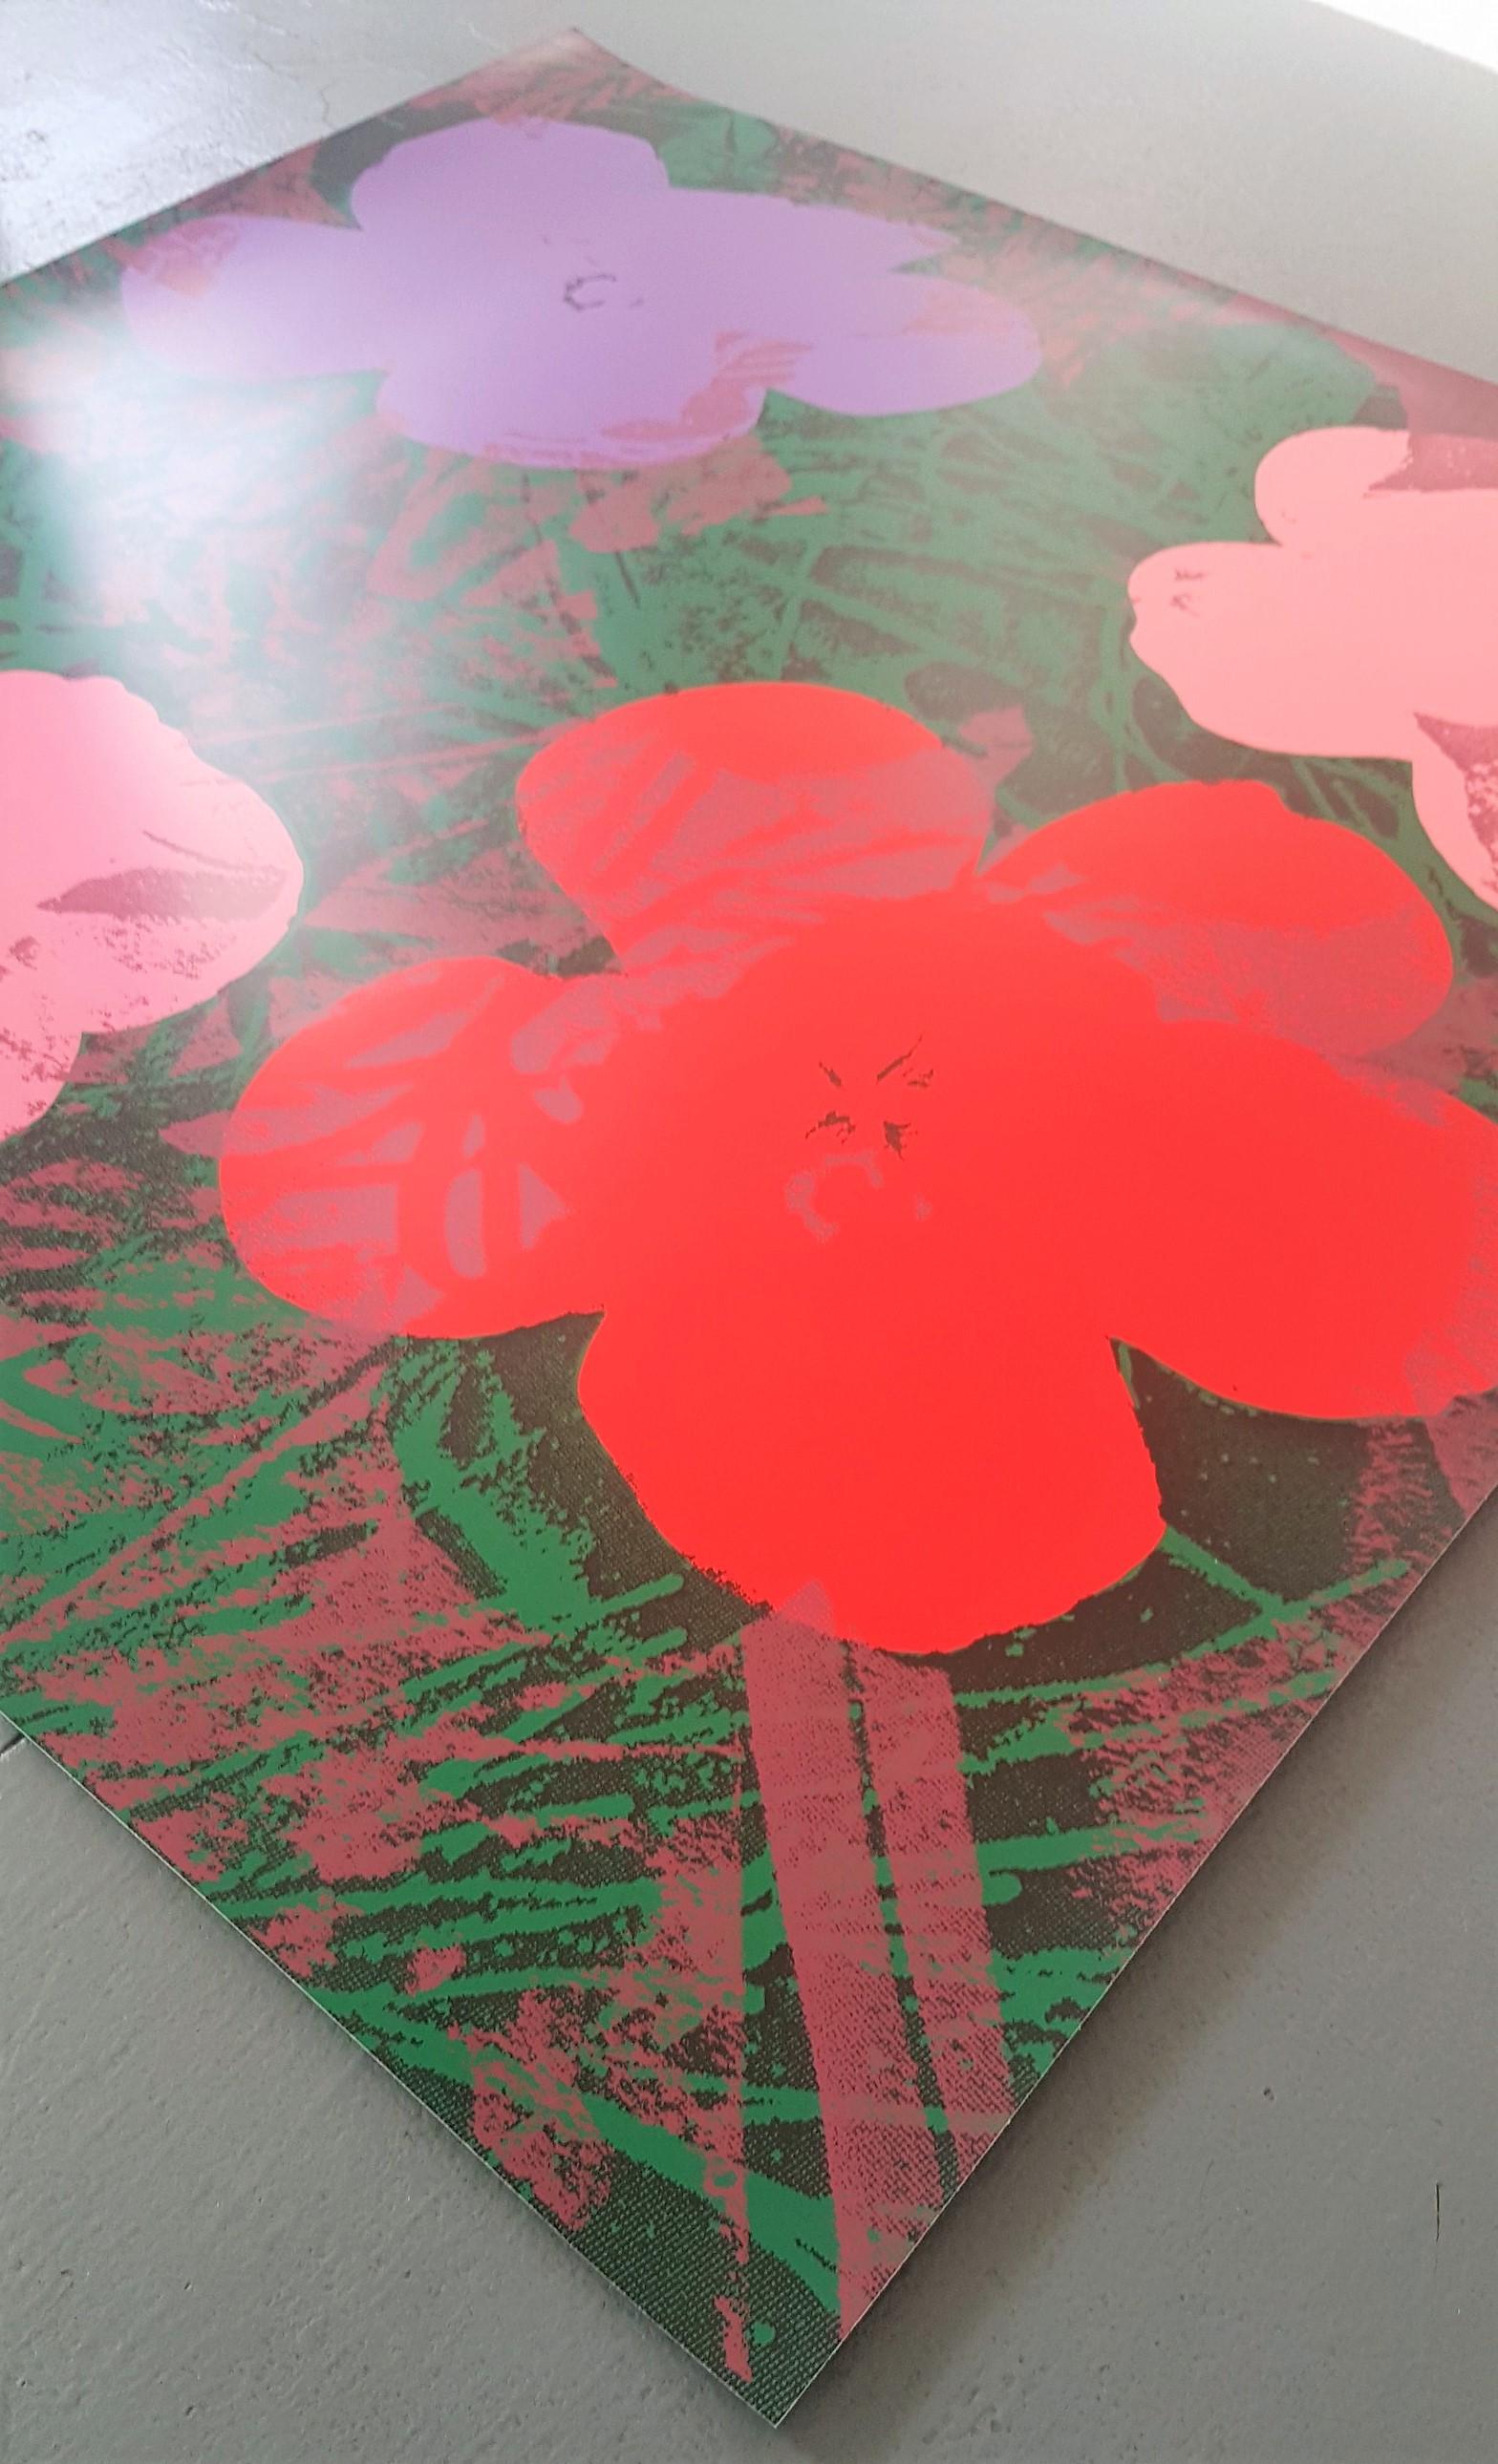 Blumen (Rosa, Rot, Violett, Lila Farbtöne – Pop Art) (~65% OFF-LIST-Preis, SCHLUSSVERKAUFZICHT) – Print von Jurgen Kuhl 